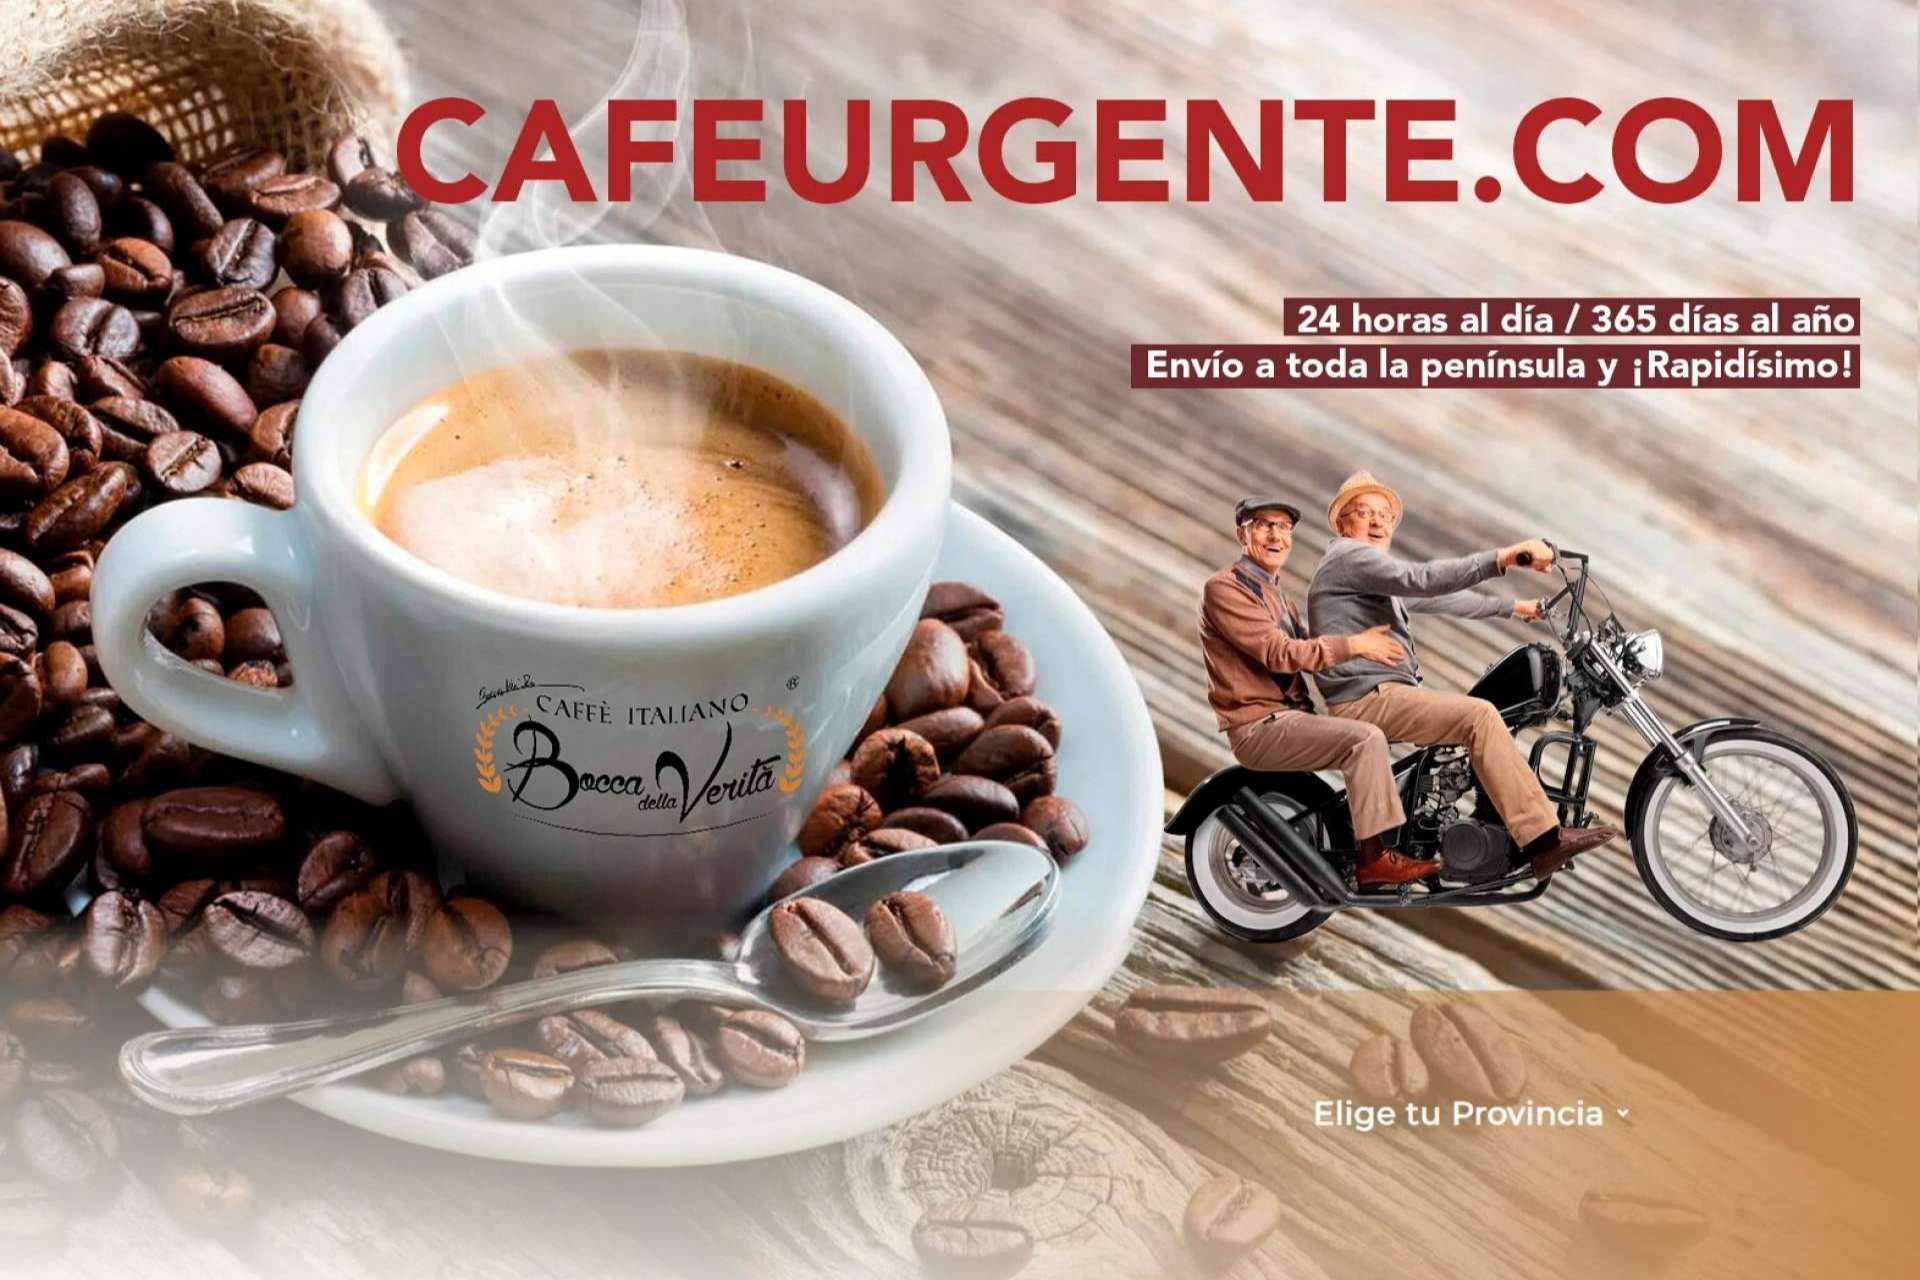 El servicio de Café Urgente ahora está disponible en Madrid